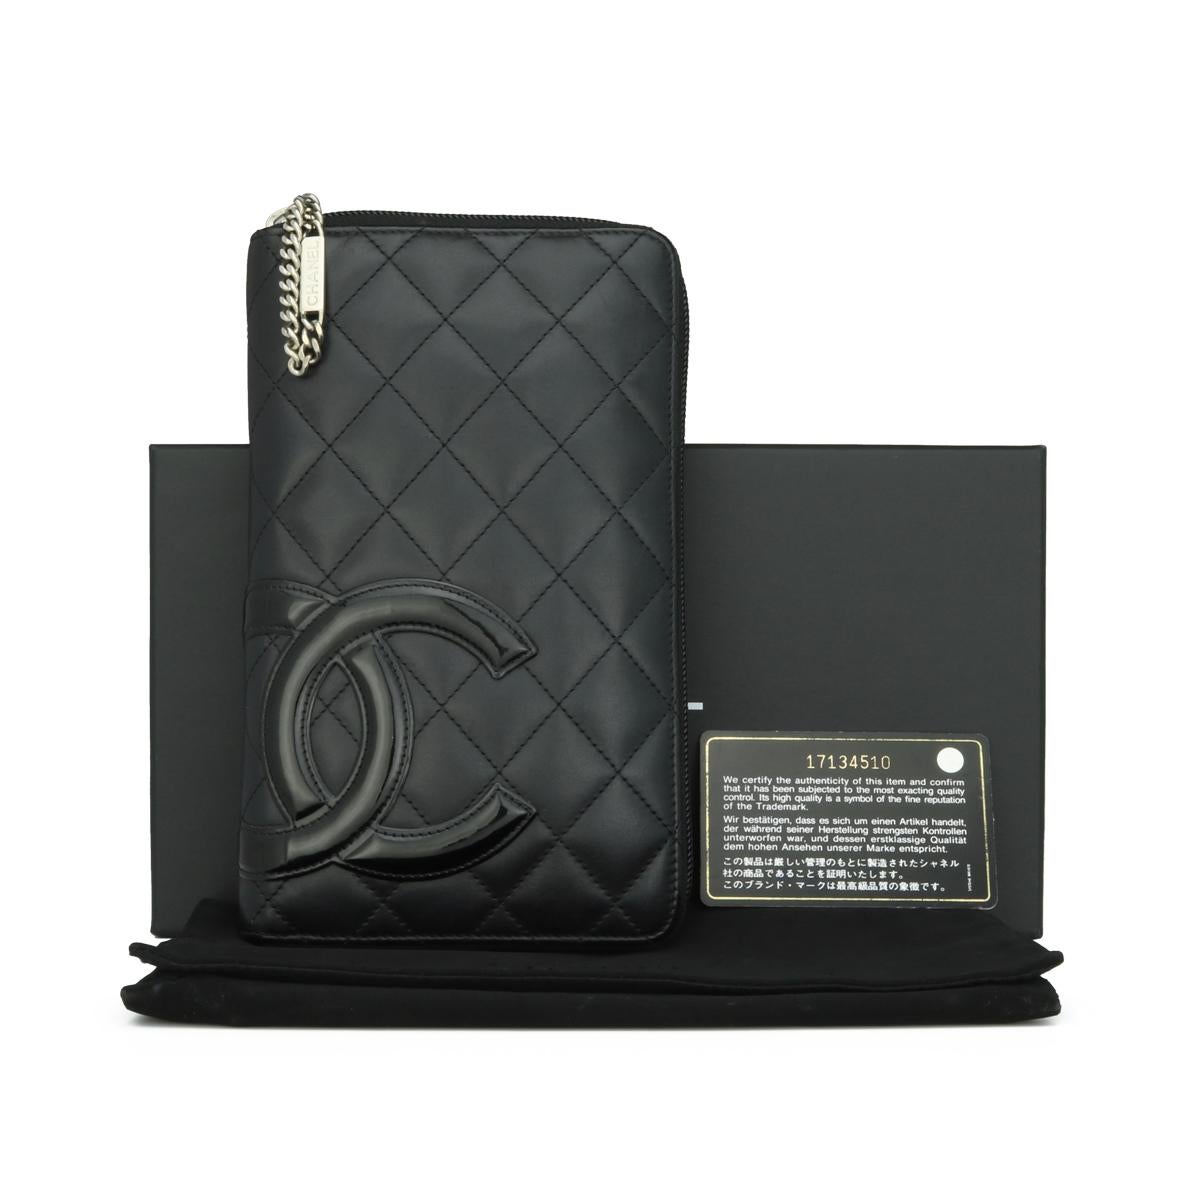 CHANEL Quilted Cambon Large Long Zipped Wallet Schwarzes Kalbsleder mit silberfarbener Hardware 2013.

Diese atemberaubende große Brieftasche mit Reißverschluss ist in gutem Zustand. Es hat immer noch seine ursprüngliche Form, und die Hardware ist